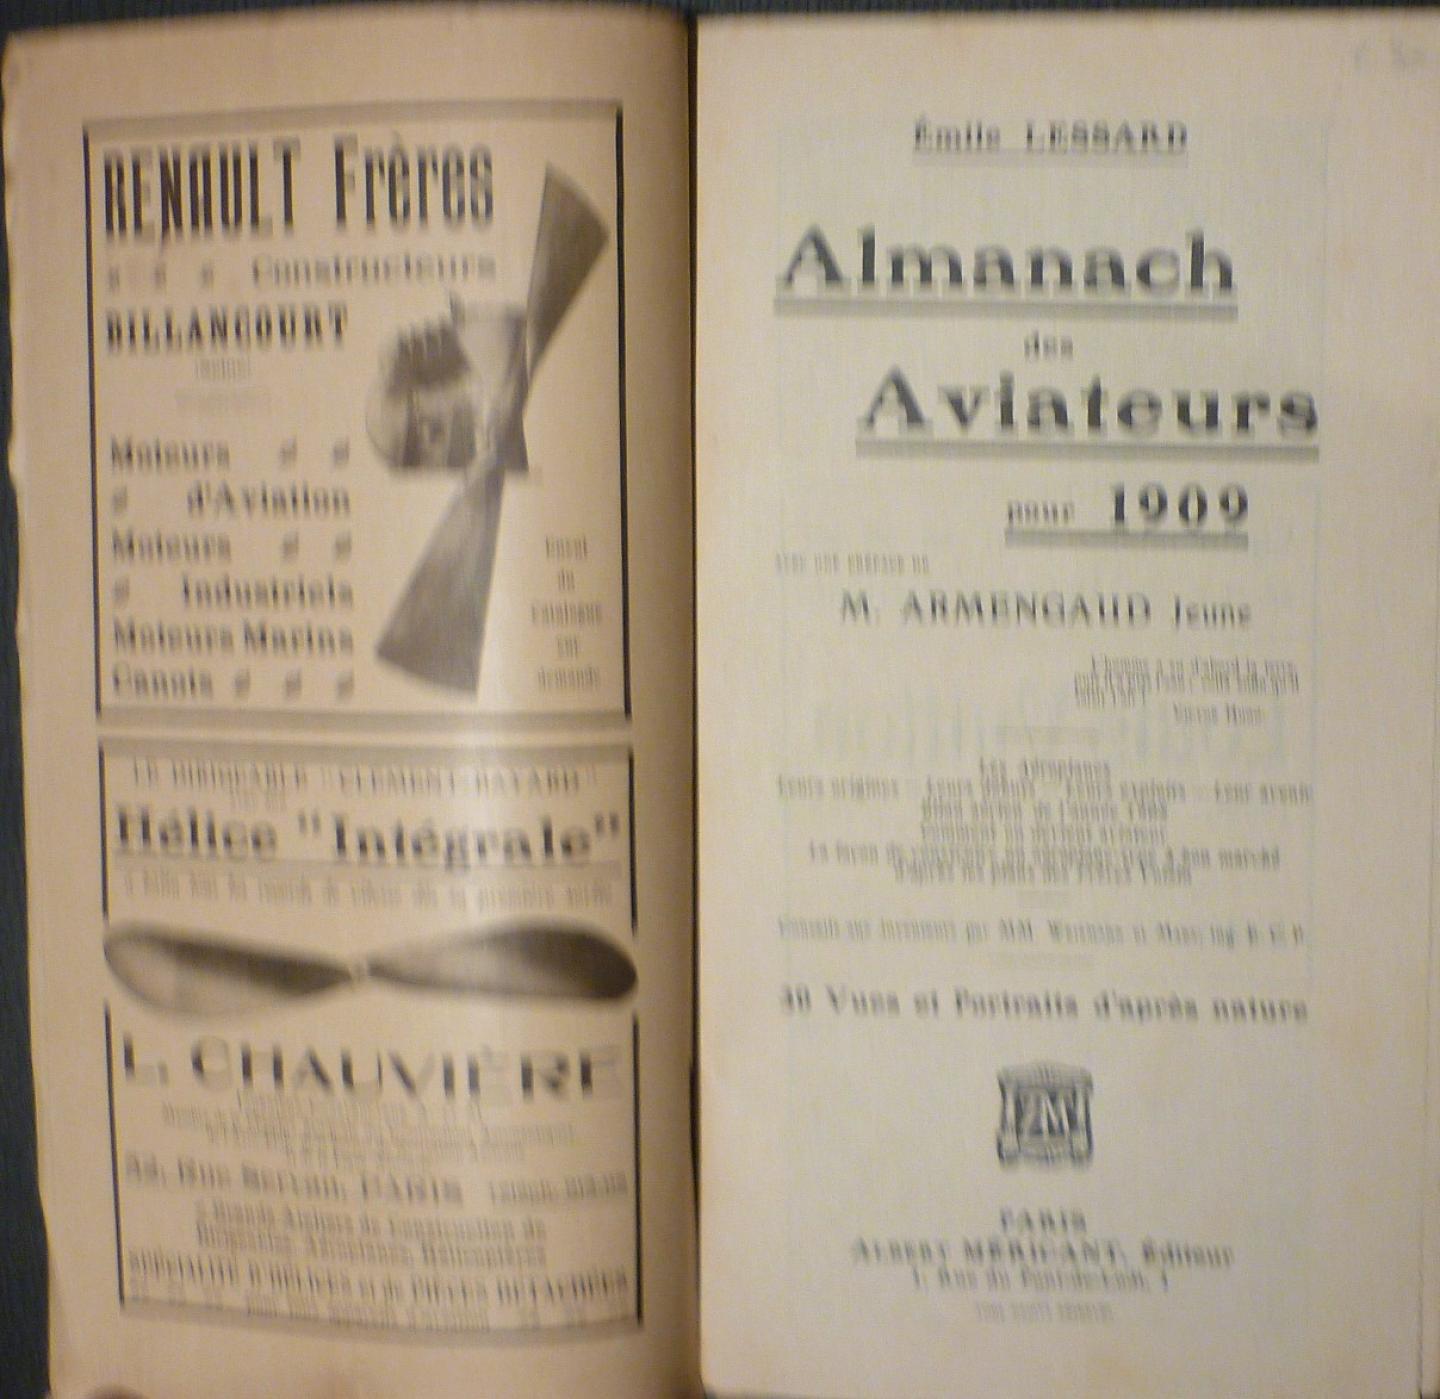 Lessard, Émile - Almanach des Aviateurs pour 1909